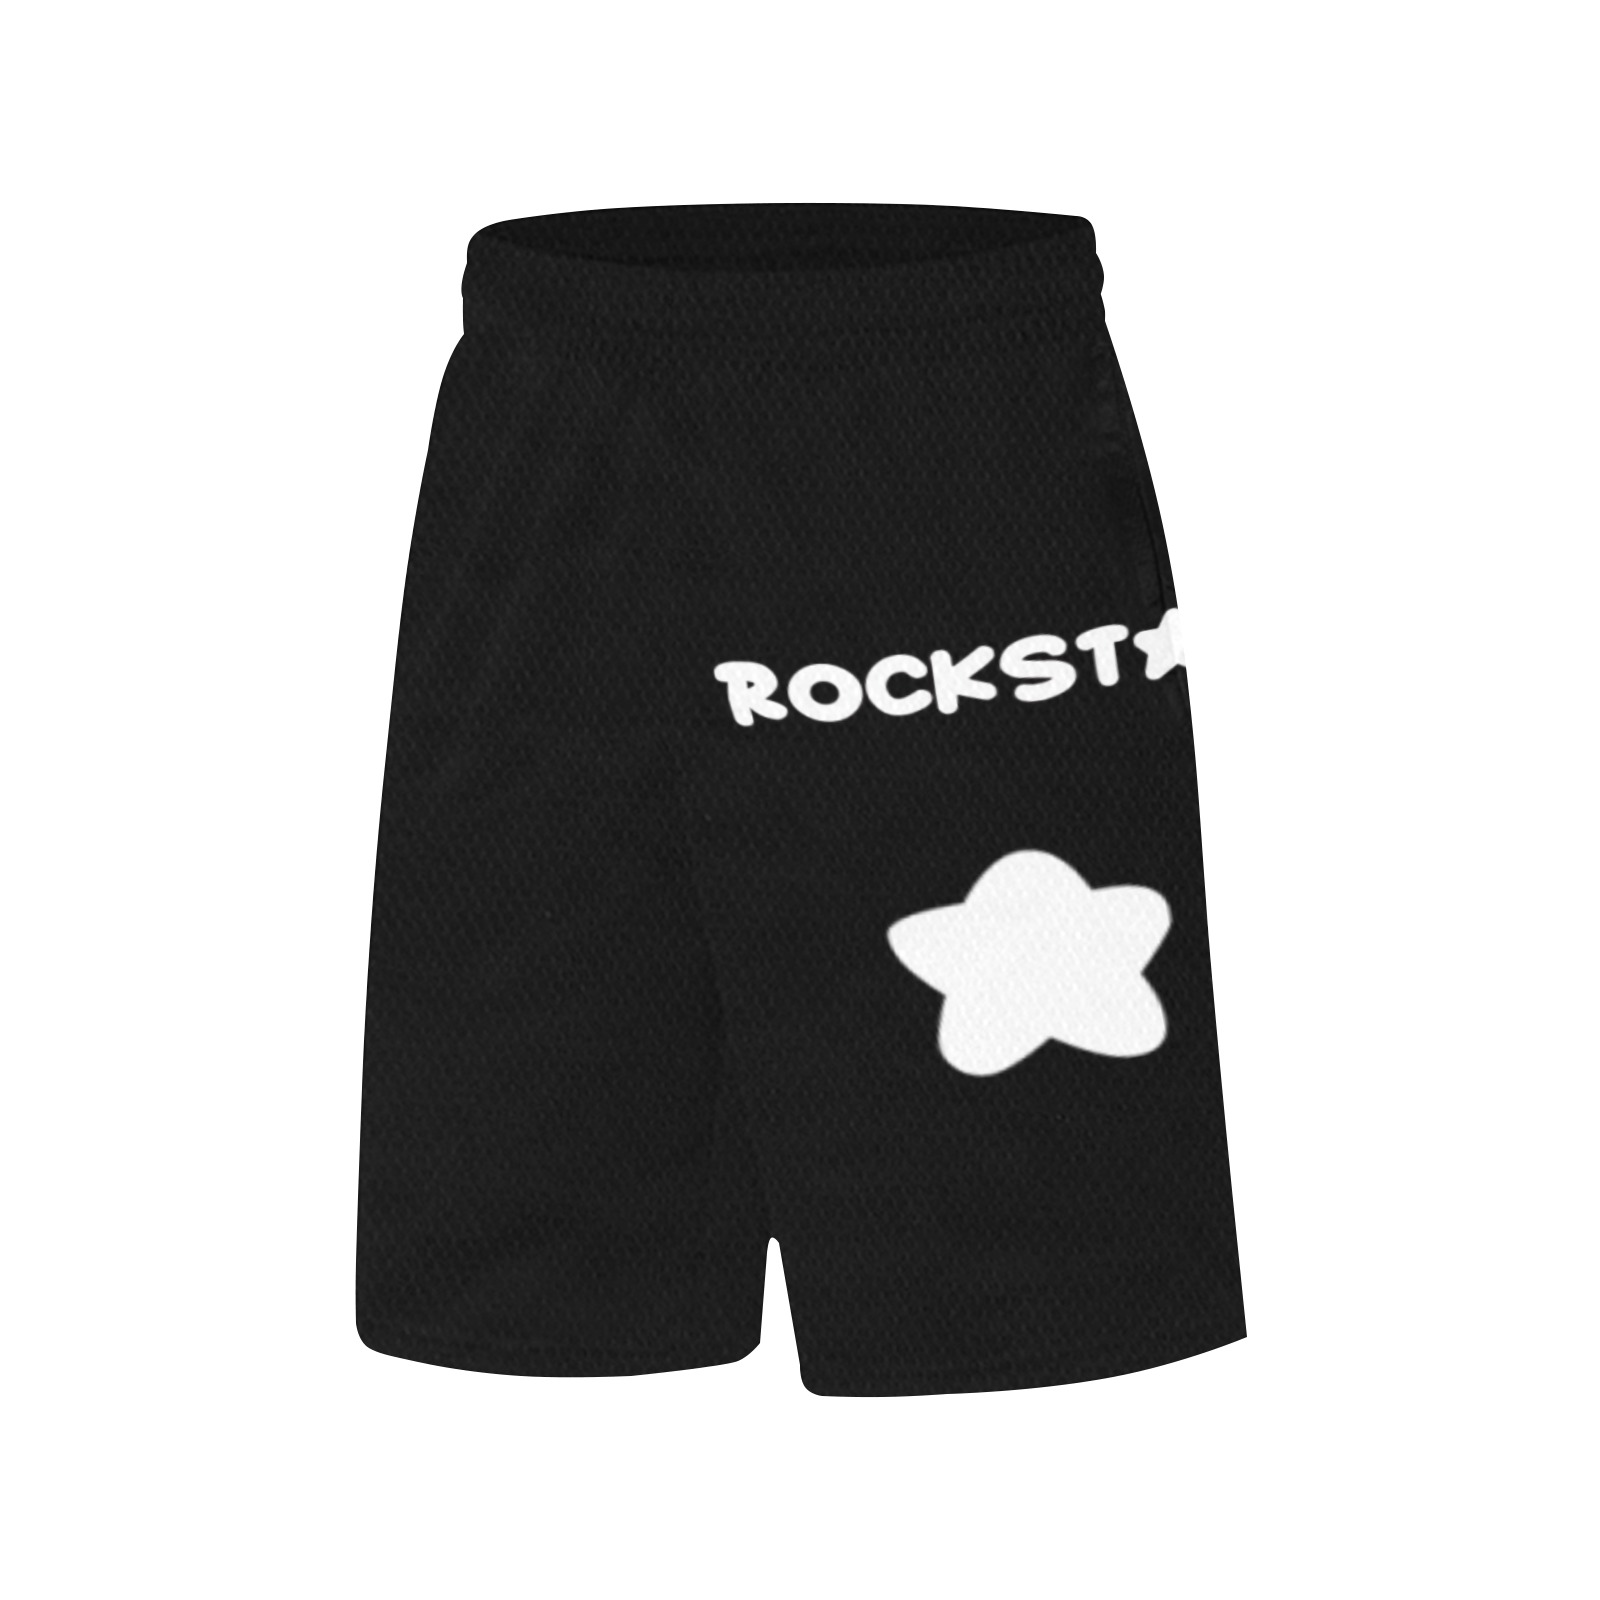 Rockstar Basketball shorts All Over Print Basketball Shorts with Pocket